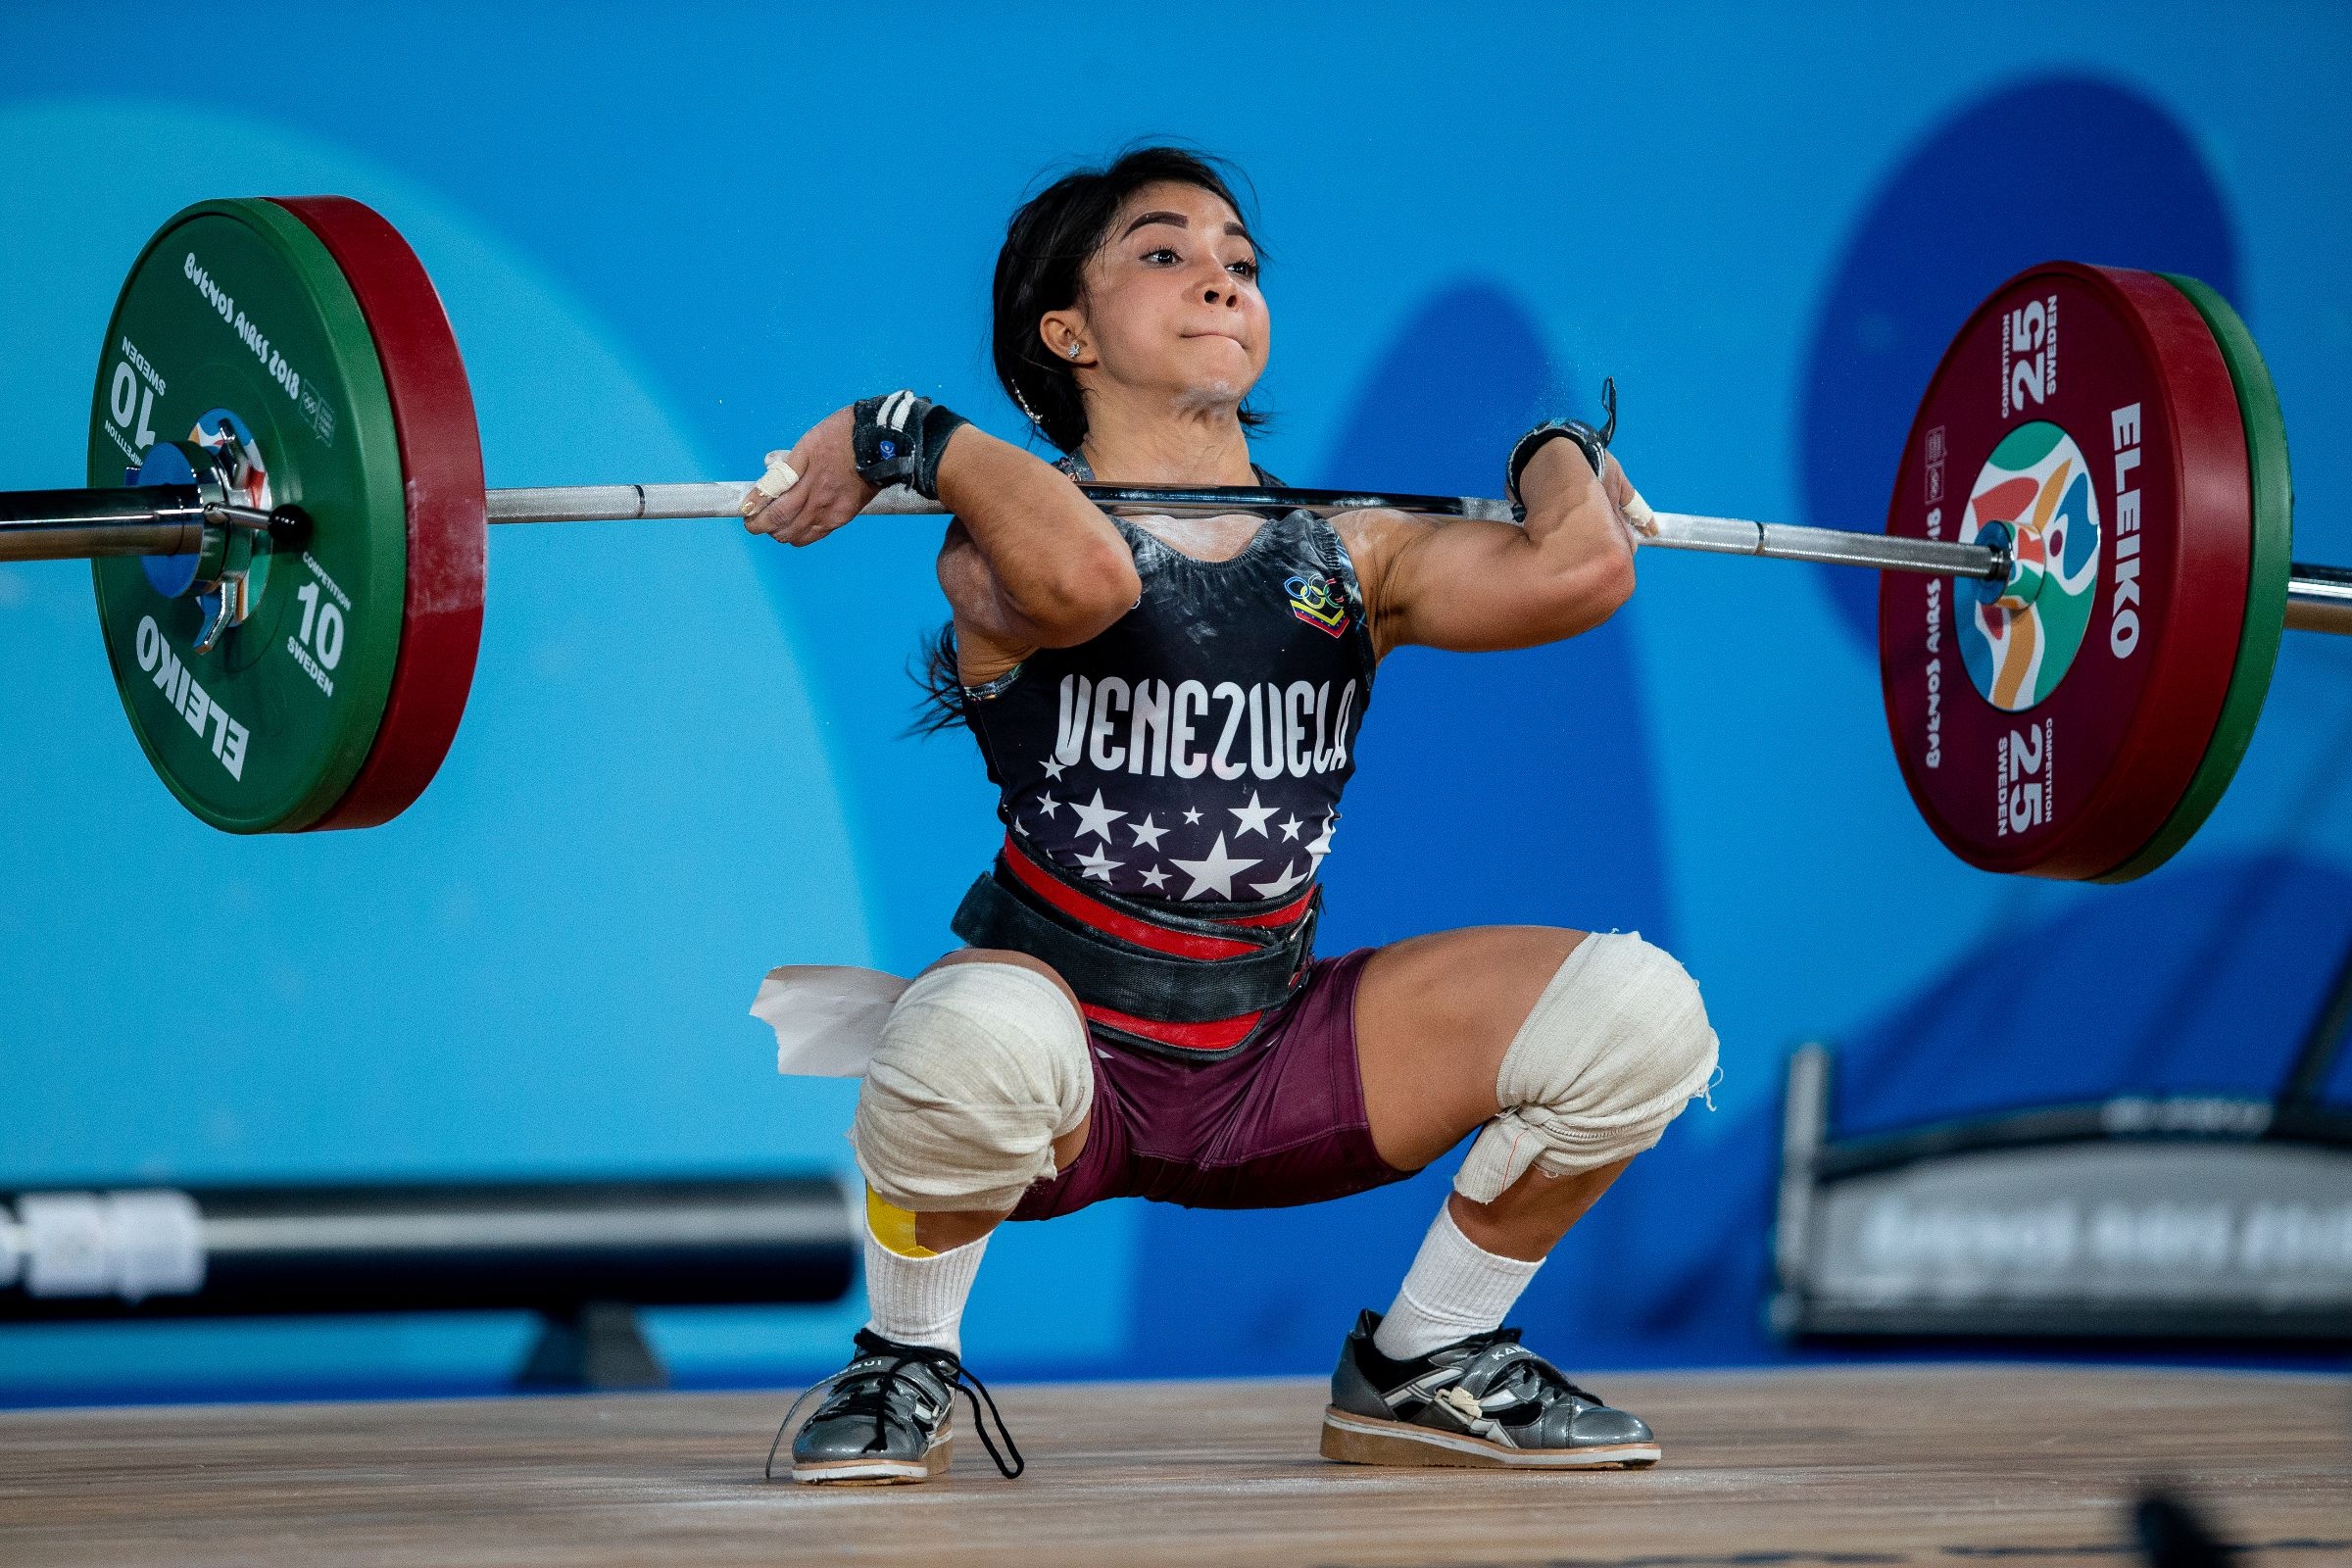 Weightlifting: A Venezuelan weightlifter, Weight class, Squat, A powerlifting competition. 2400x1600 HD Wallpaper.